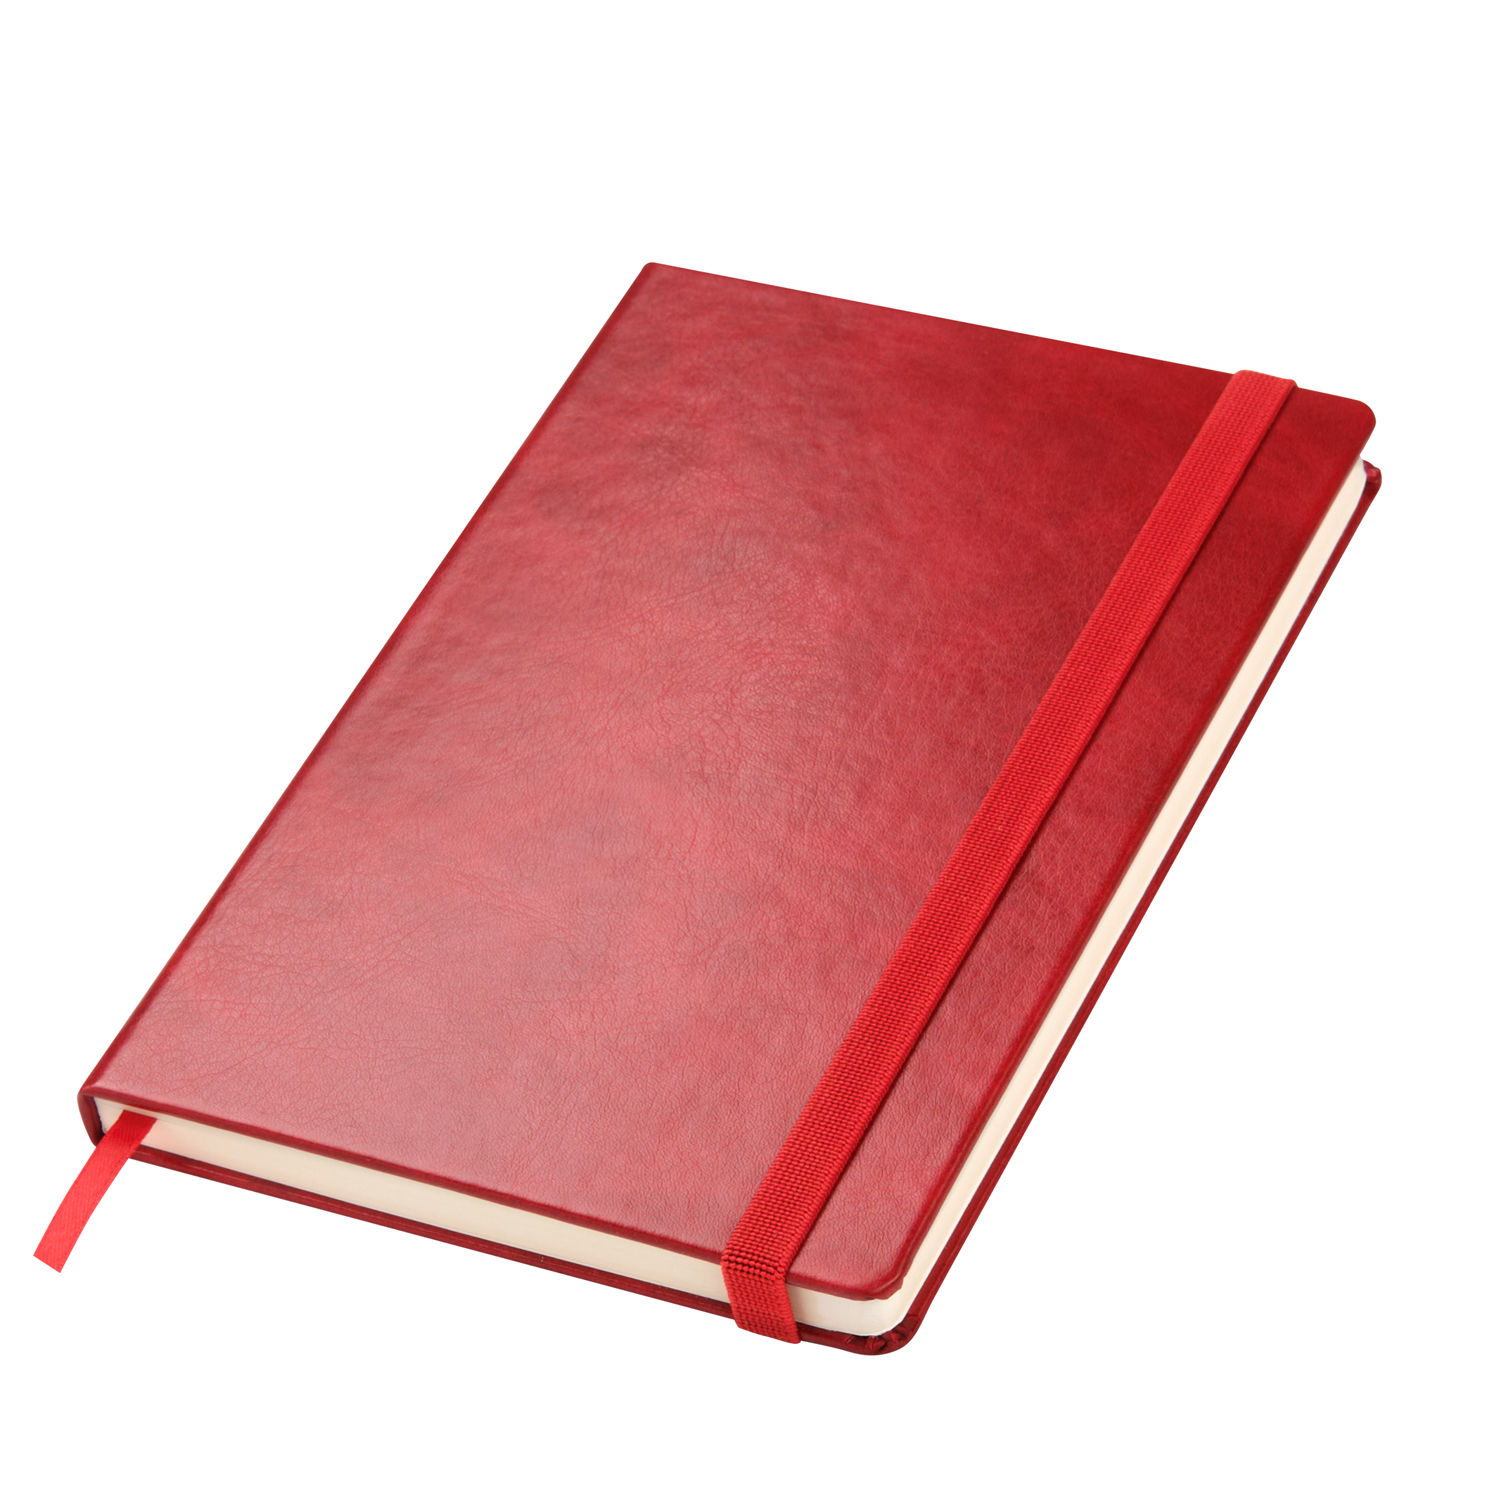 Ежедневник Vegas BtoBook недатированный, красный (без упаковки, без стикера)